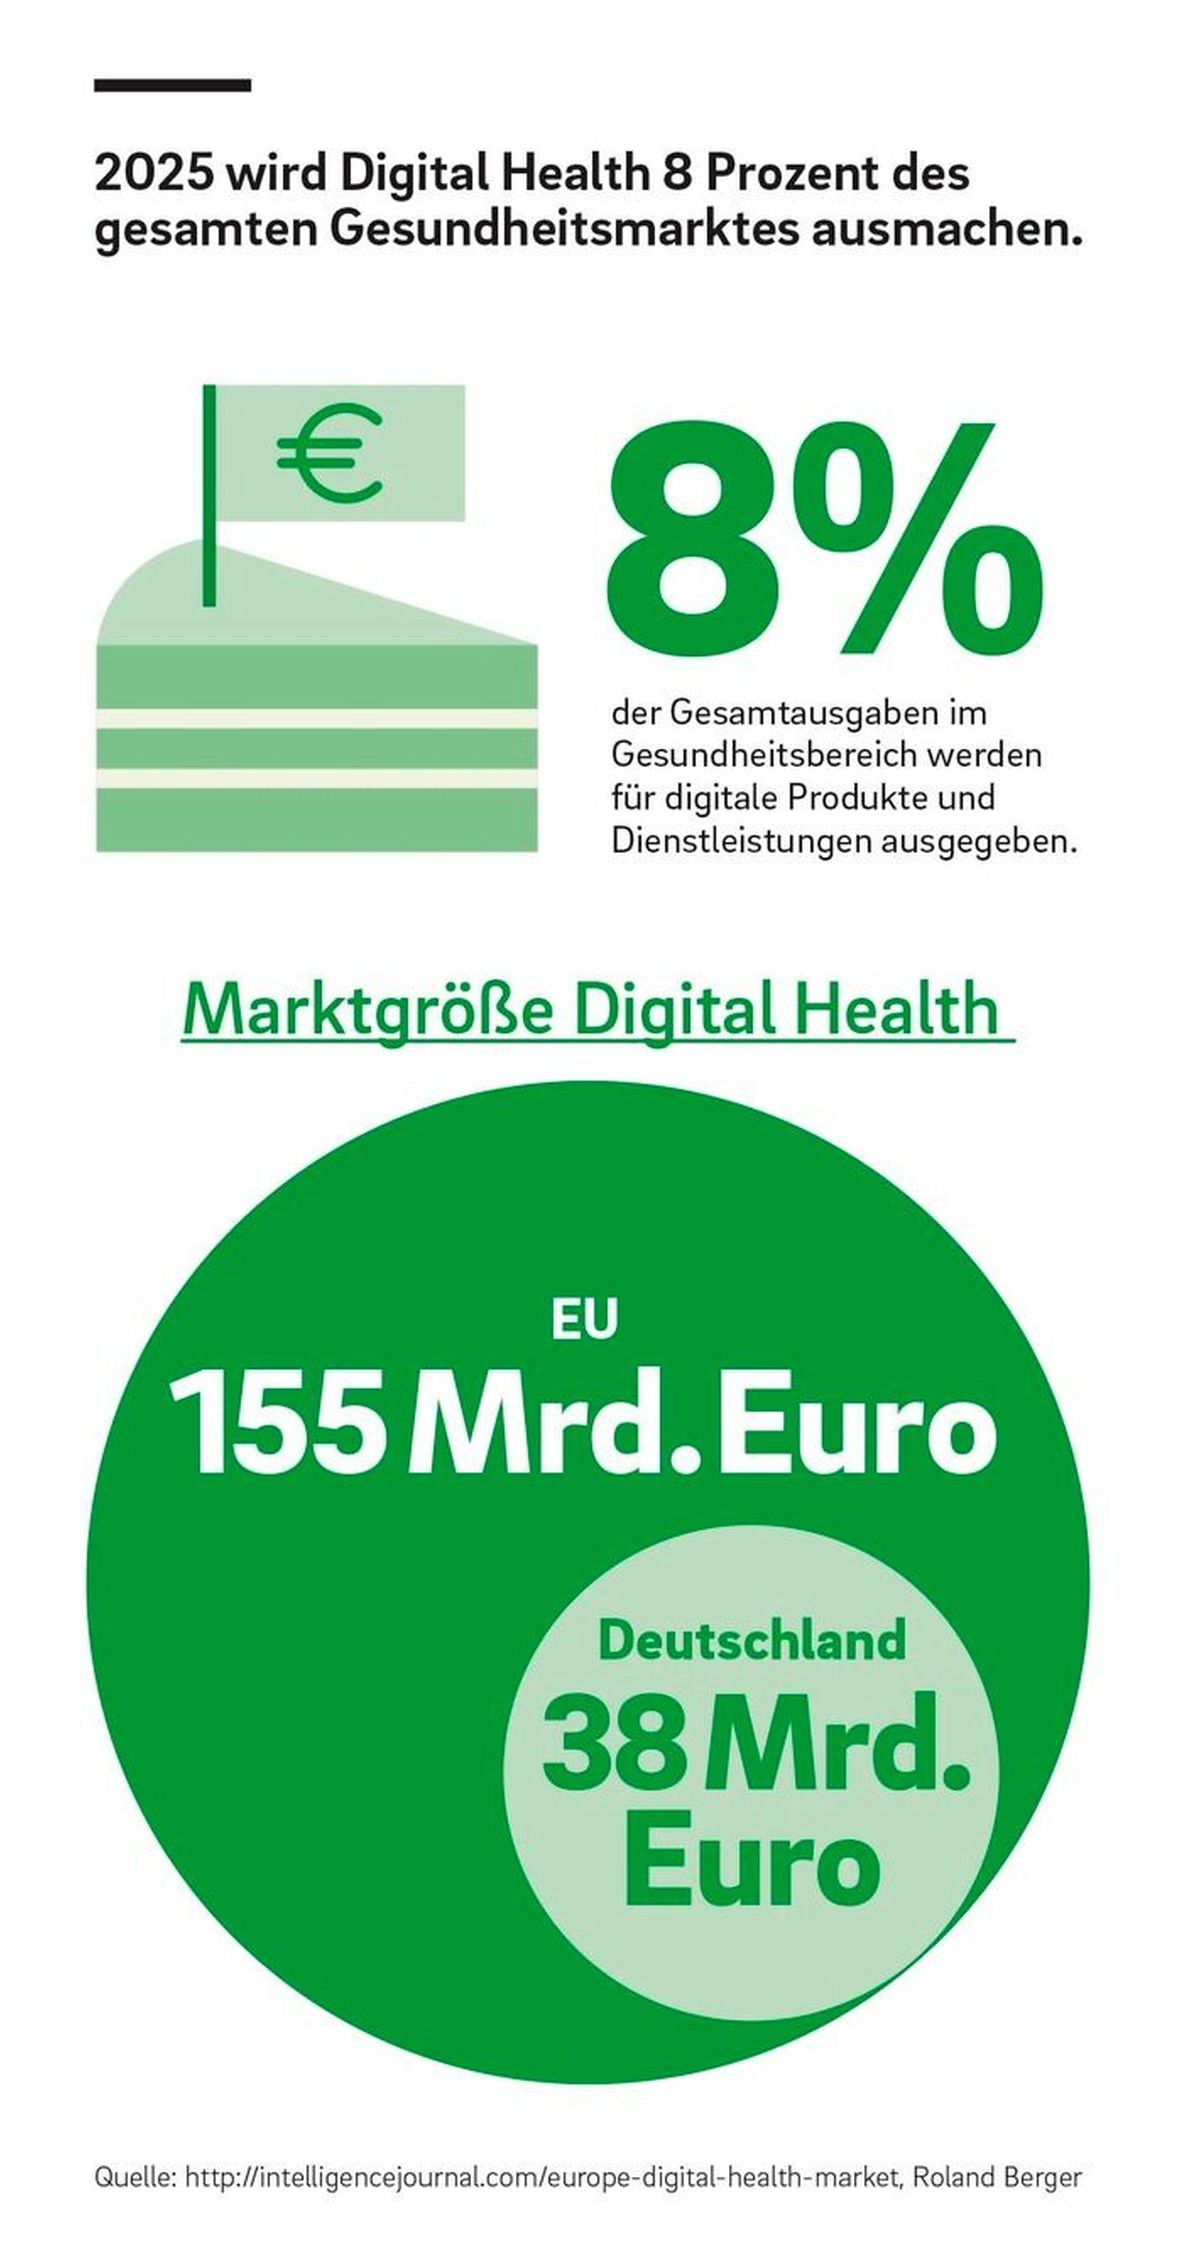 Digitaler Gesundheitsmarkt in Europa wächst